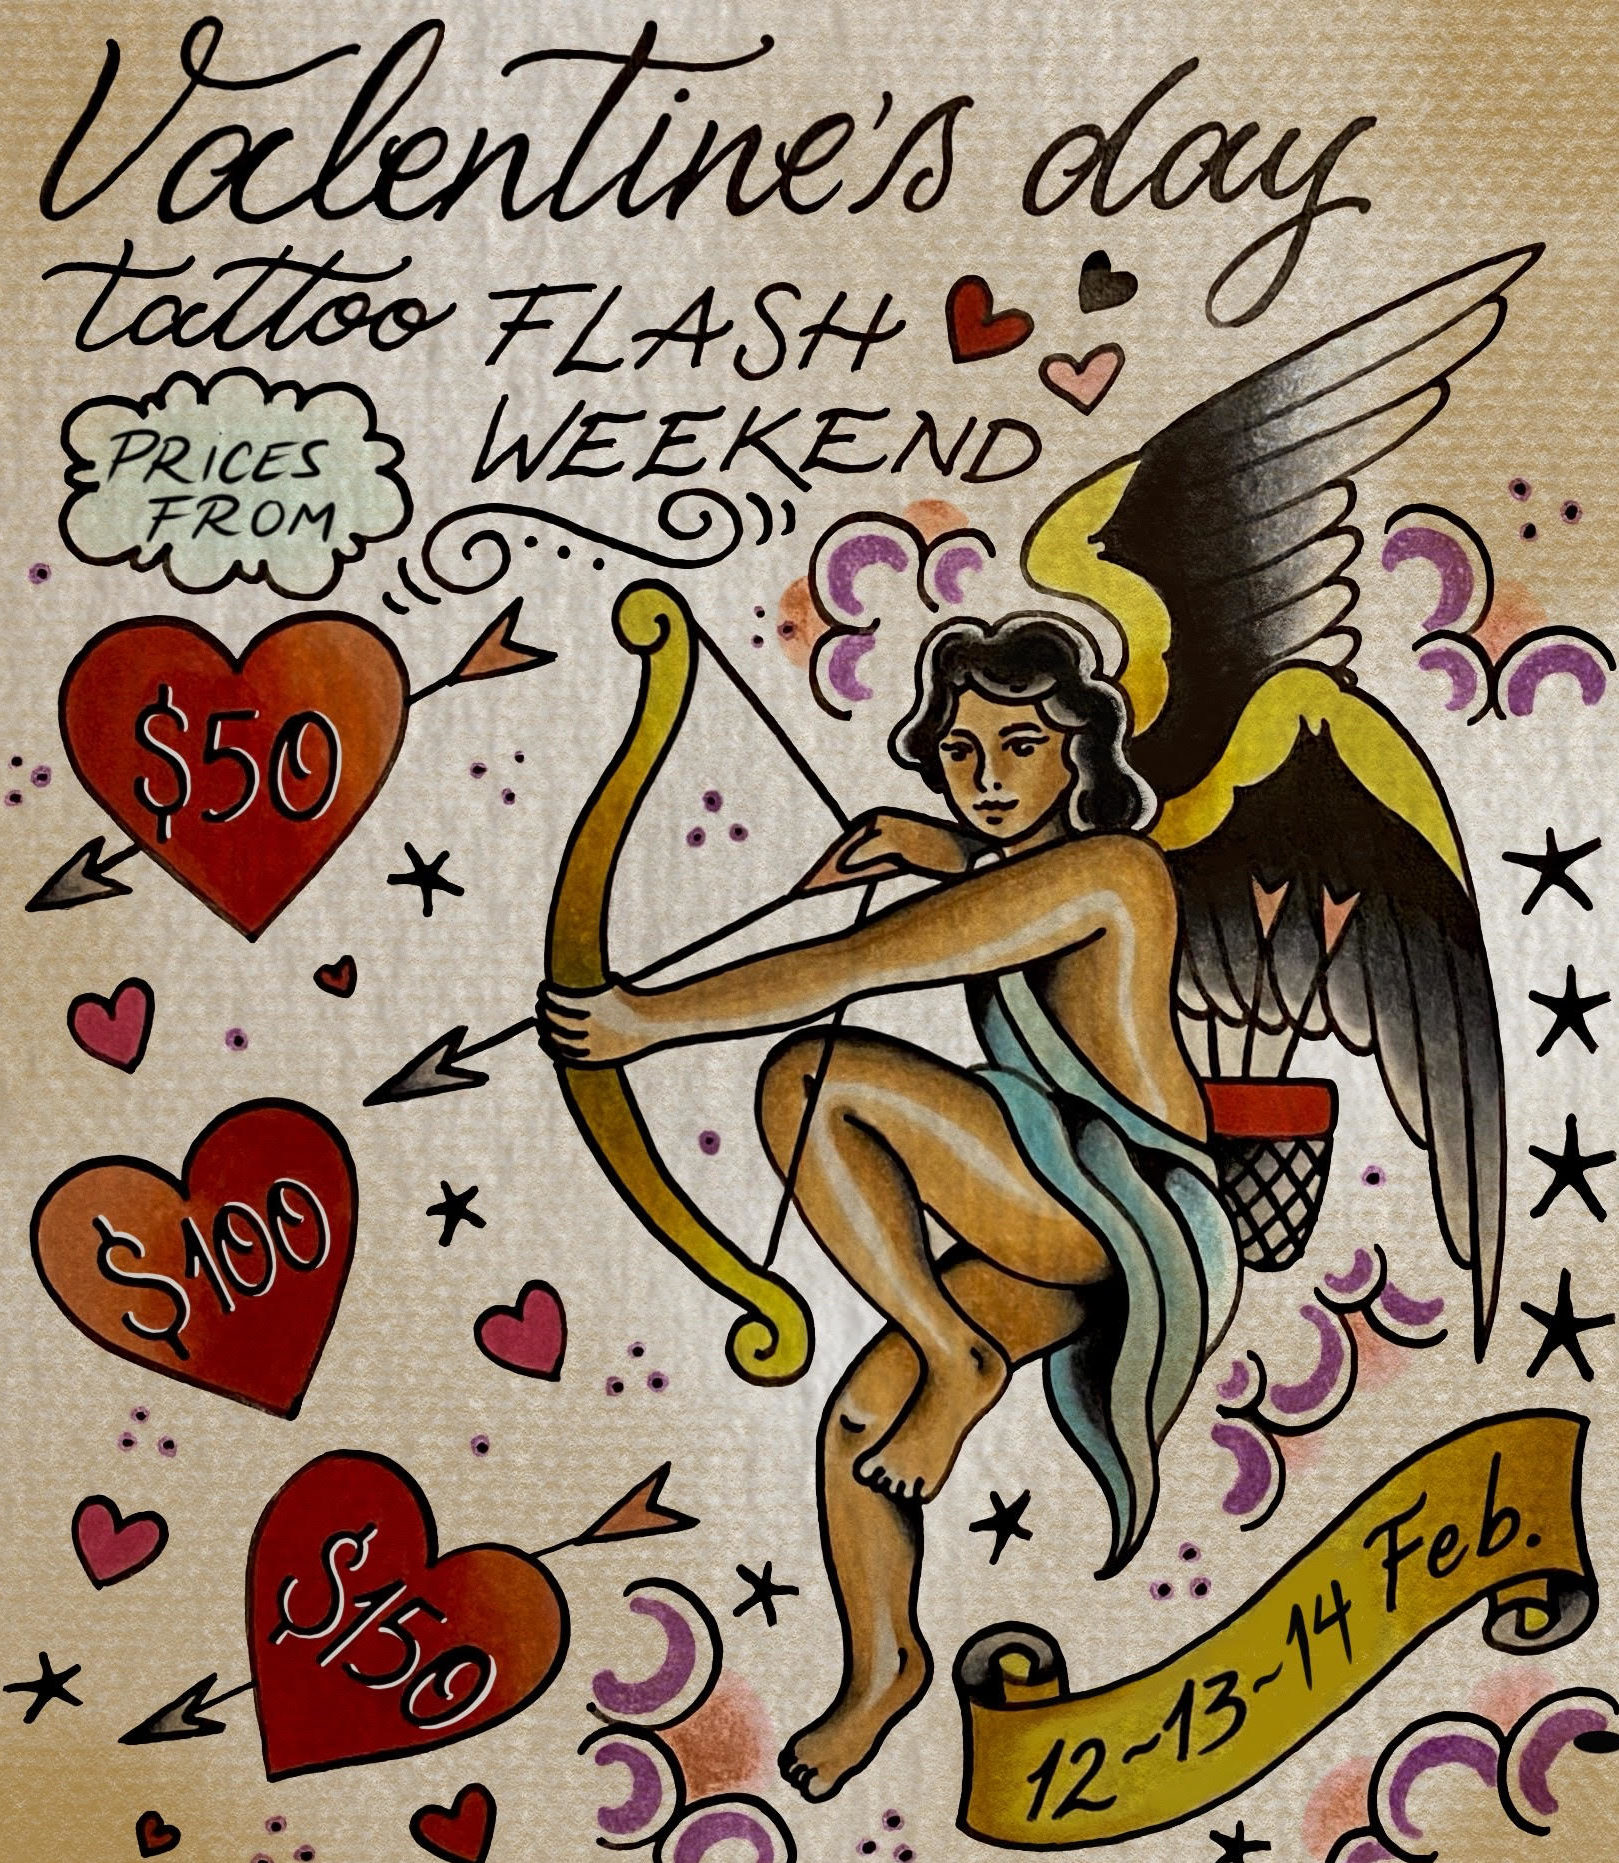 Valentines Day Tattoo Flash Weekend